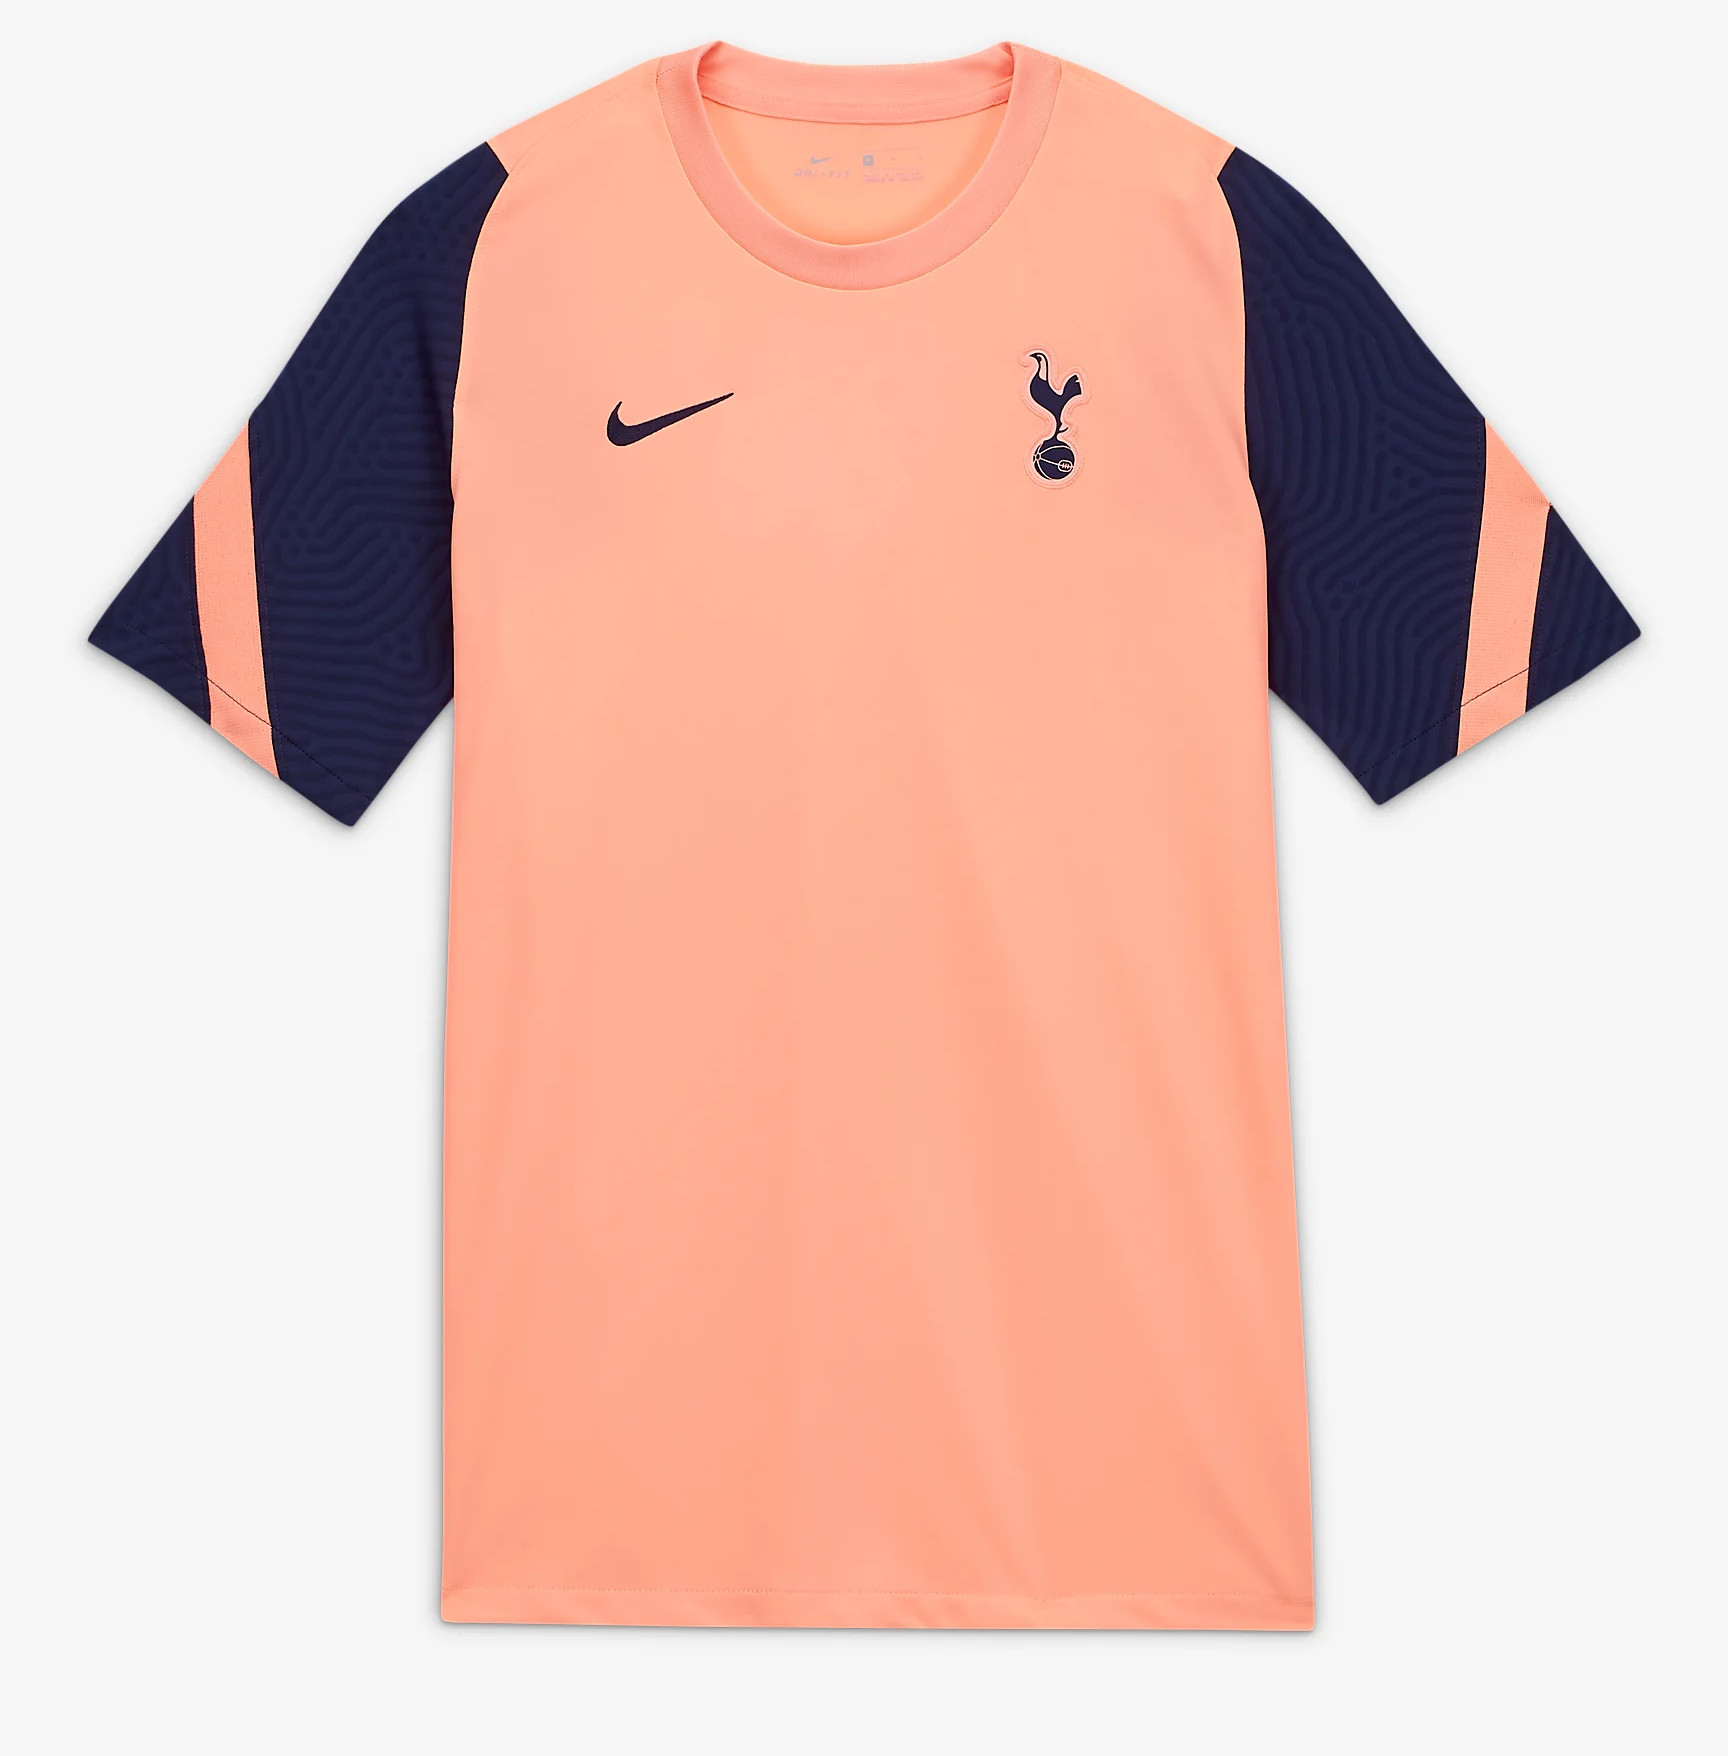 Woord Sta in plaats daarvan op ~ kant Tottenham Hotspur trainingsshirt 2020-2021 - Voetbalshirts.com